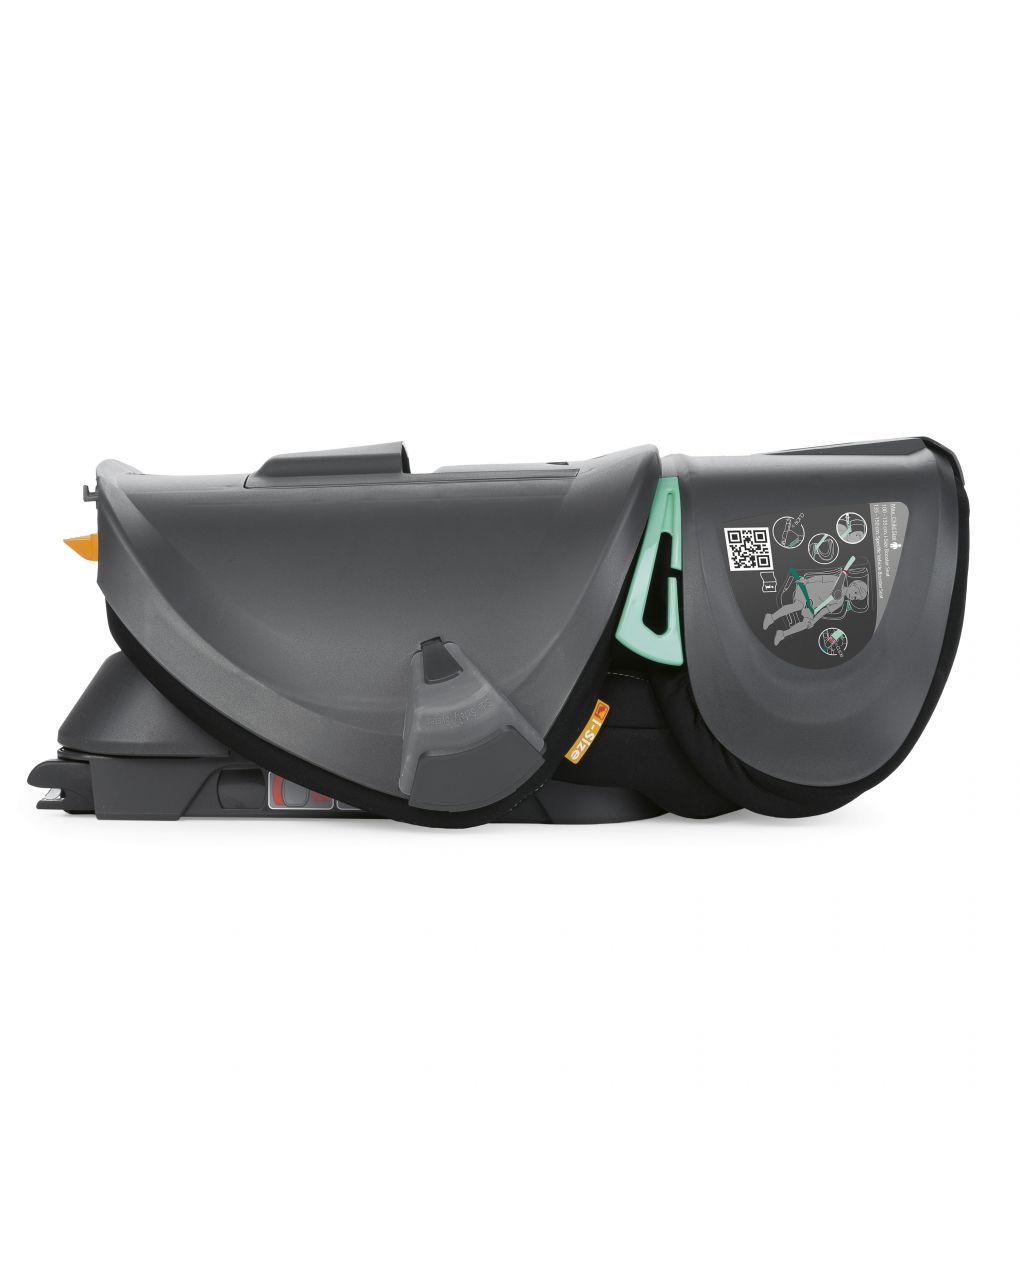 Chicco - silla auto fold&go i-size estándar black - Chicco